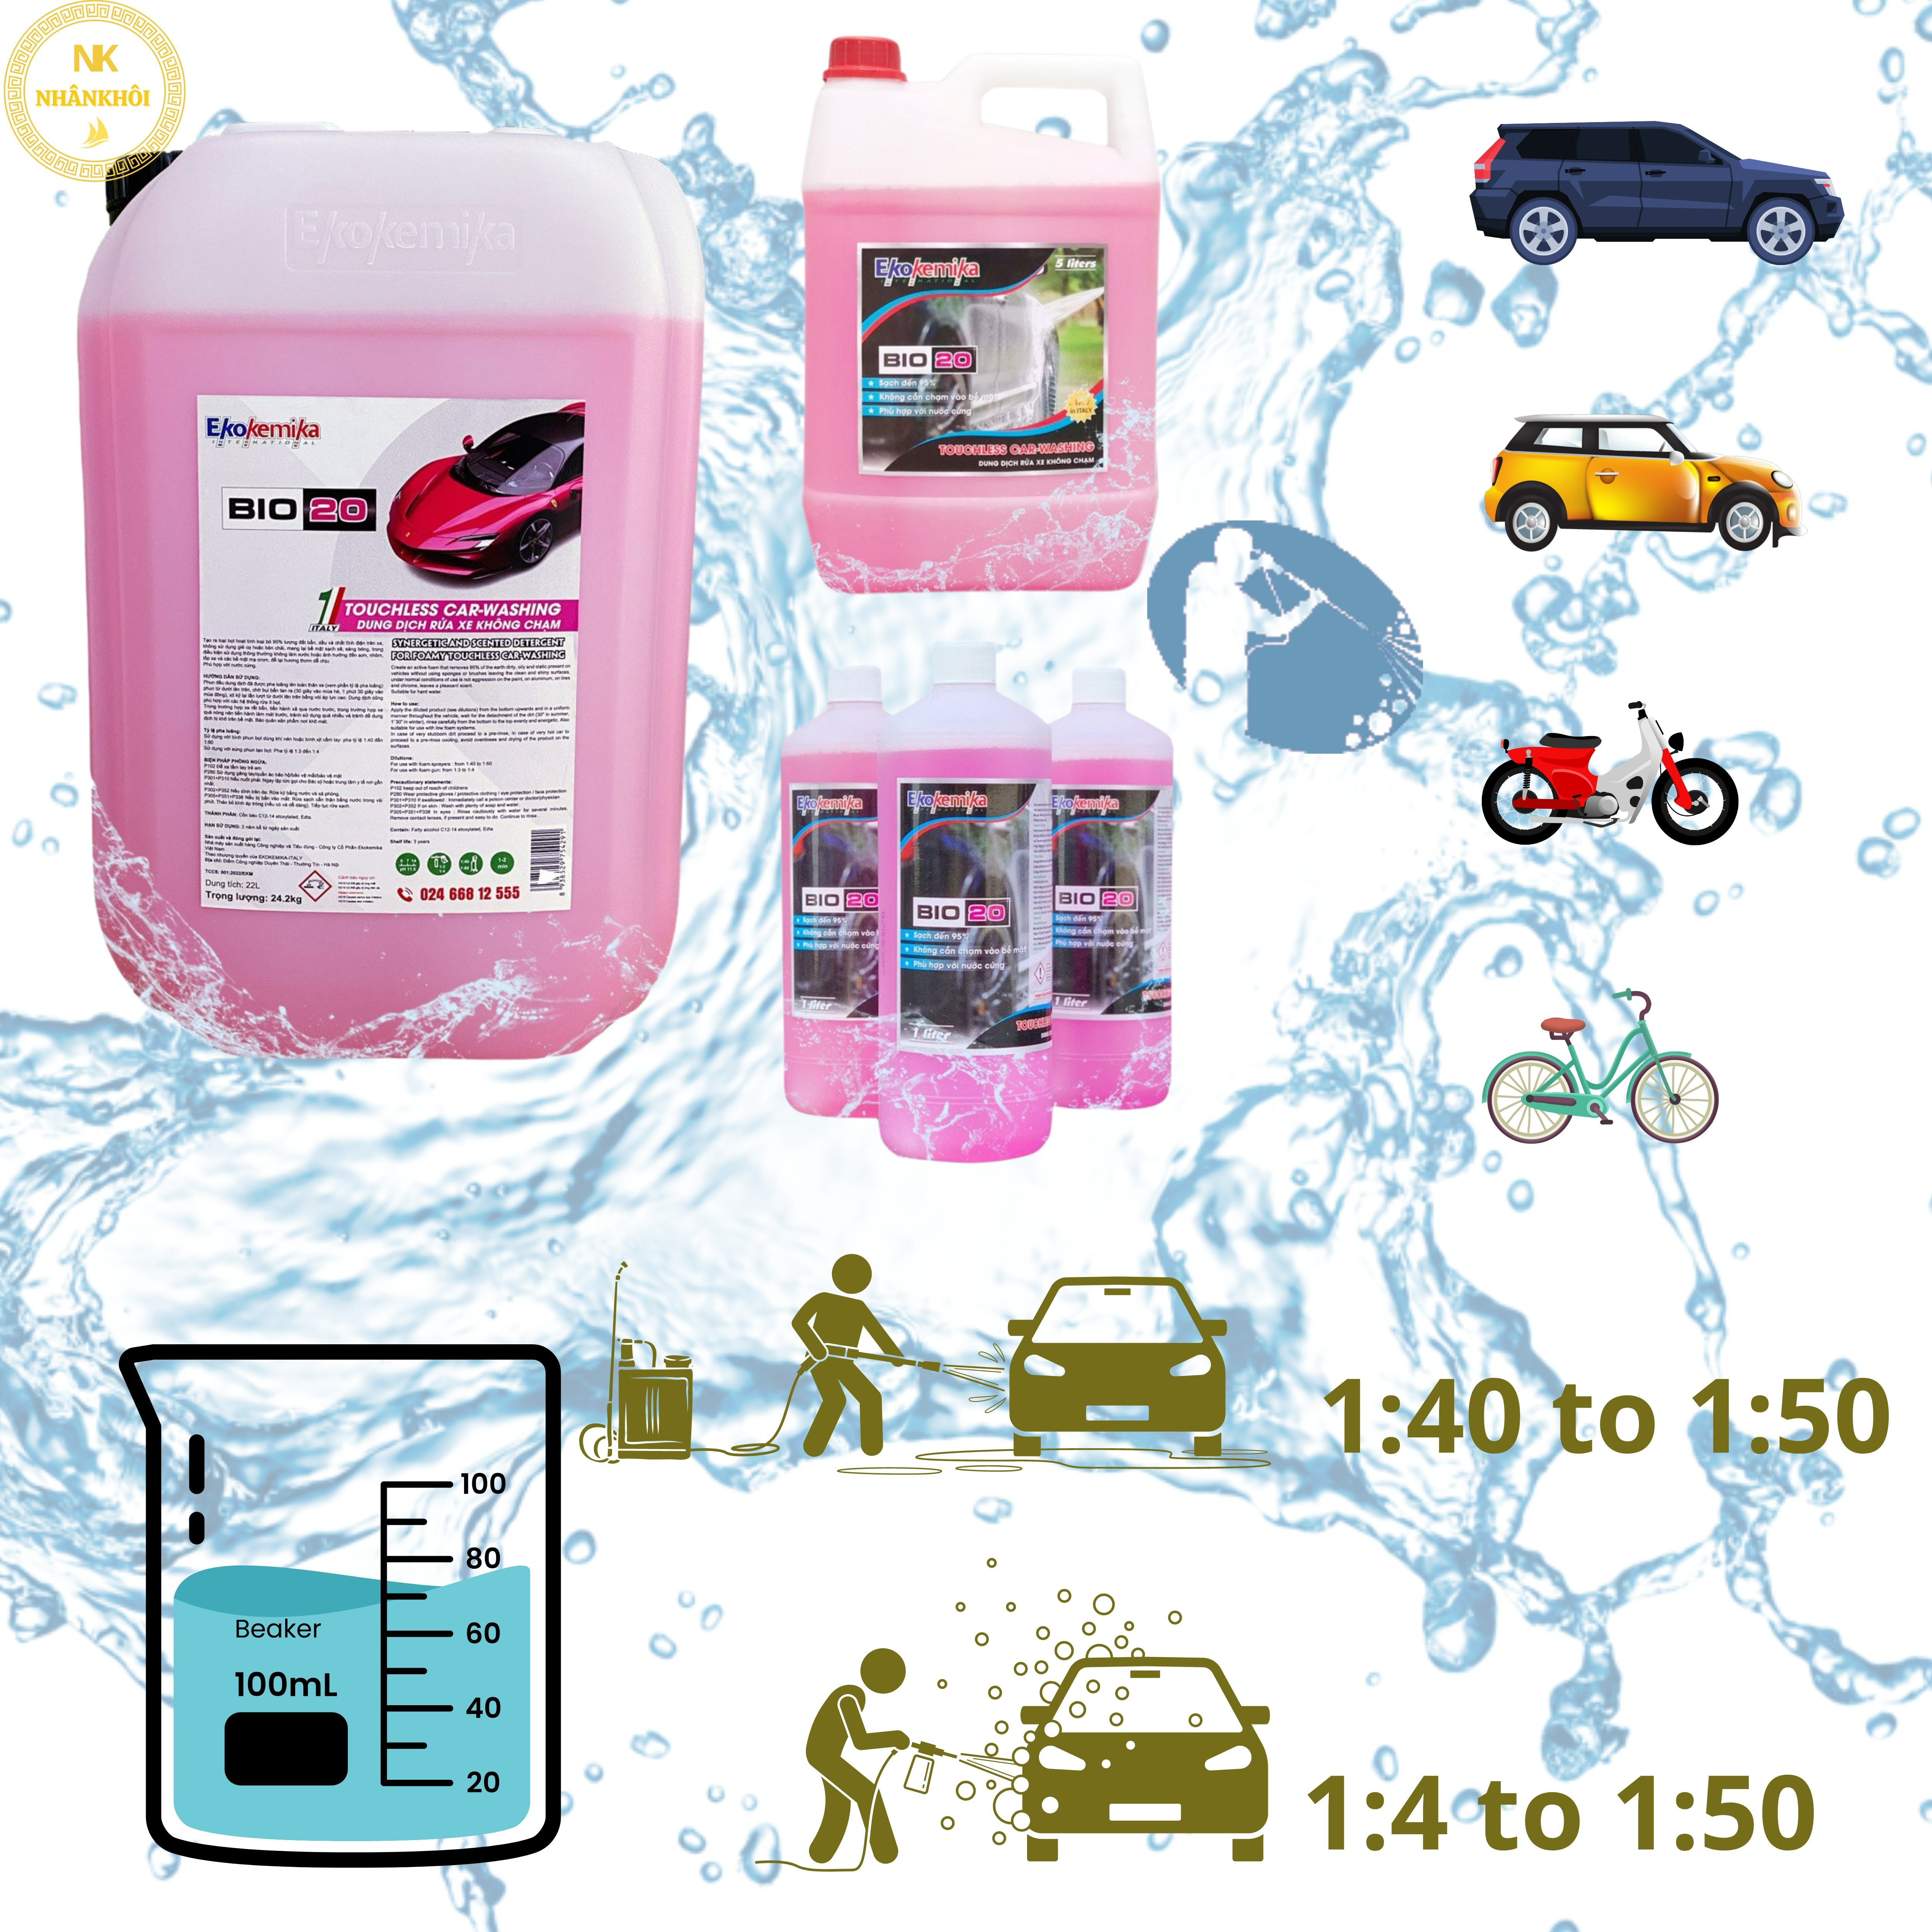 Bio 20 - 5 lít - Dung dịch rửa xe không chạm - Nước rửa xe bọt tuyết - Ekokemika